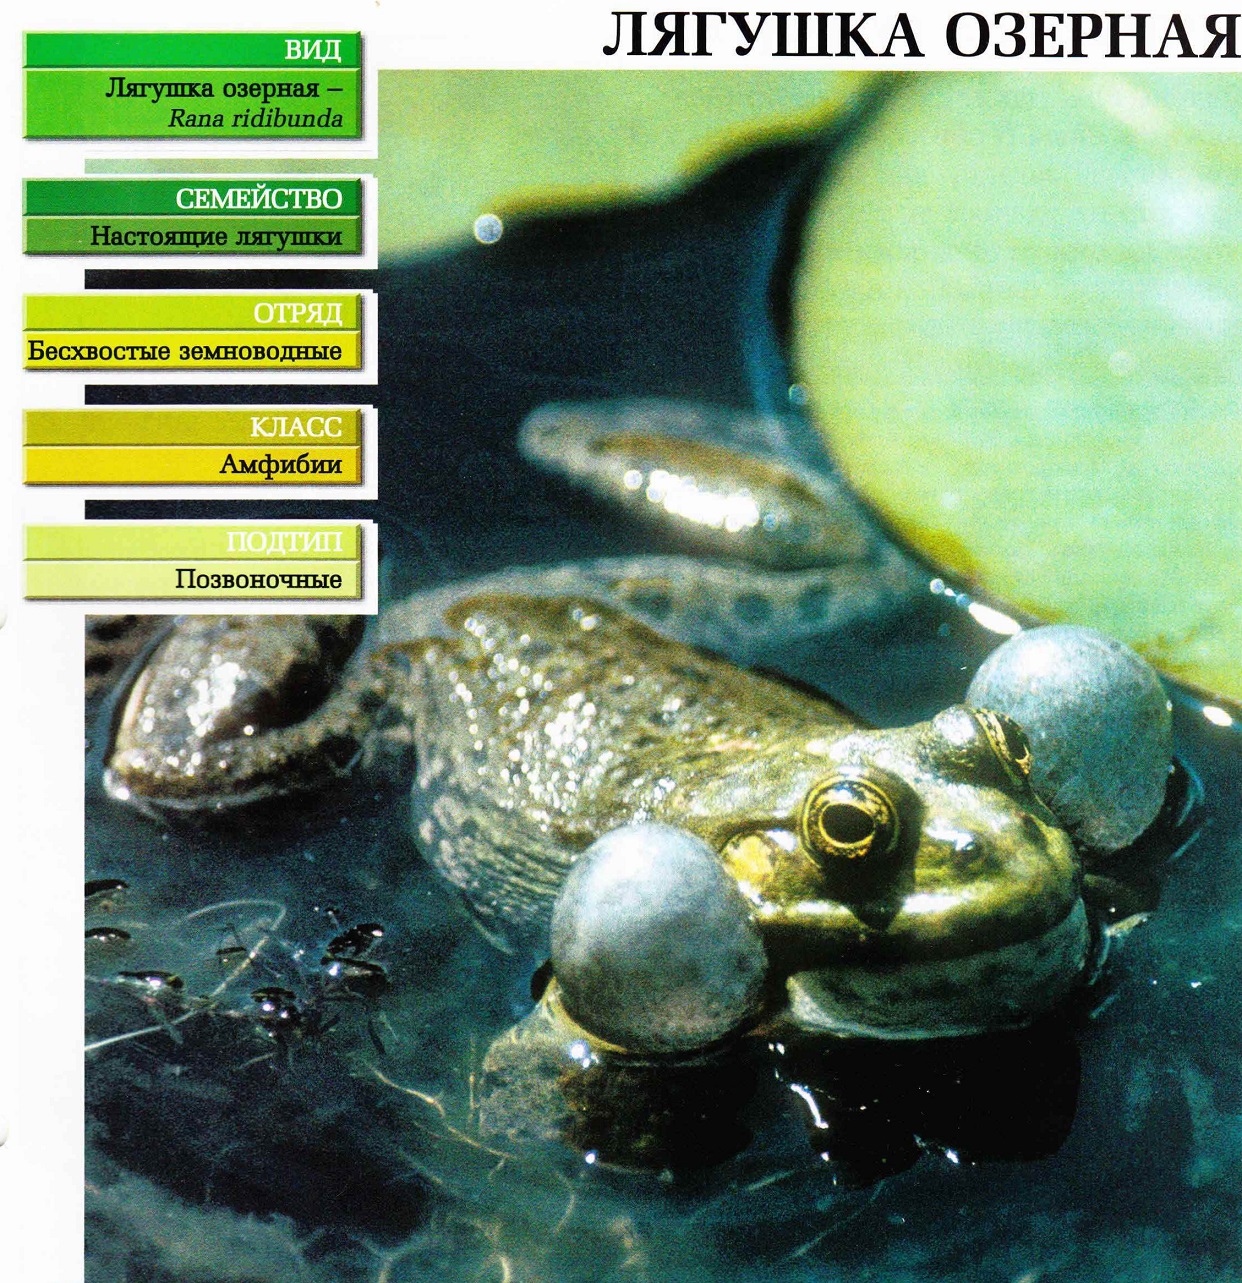 Систематика (научная классификация) лягушки озерной. Rana ridibunda.